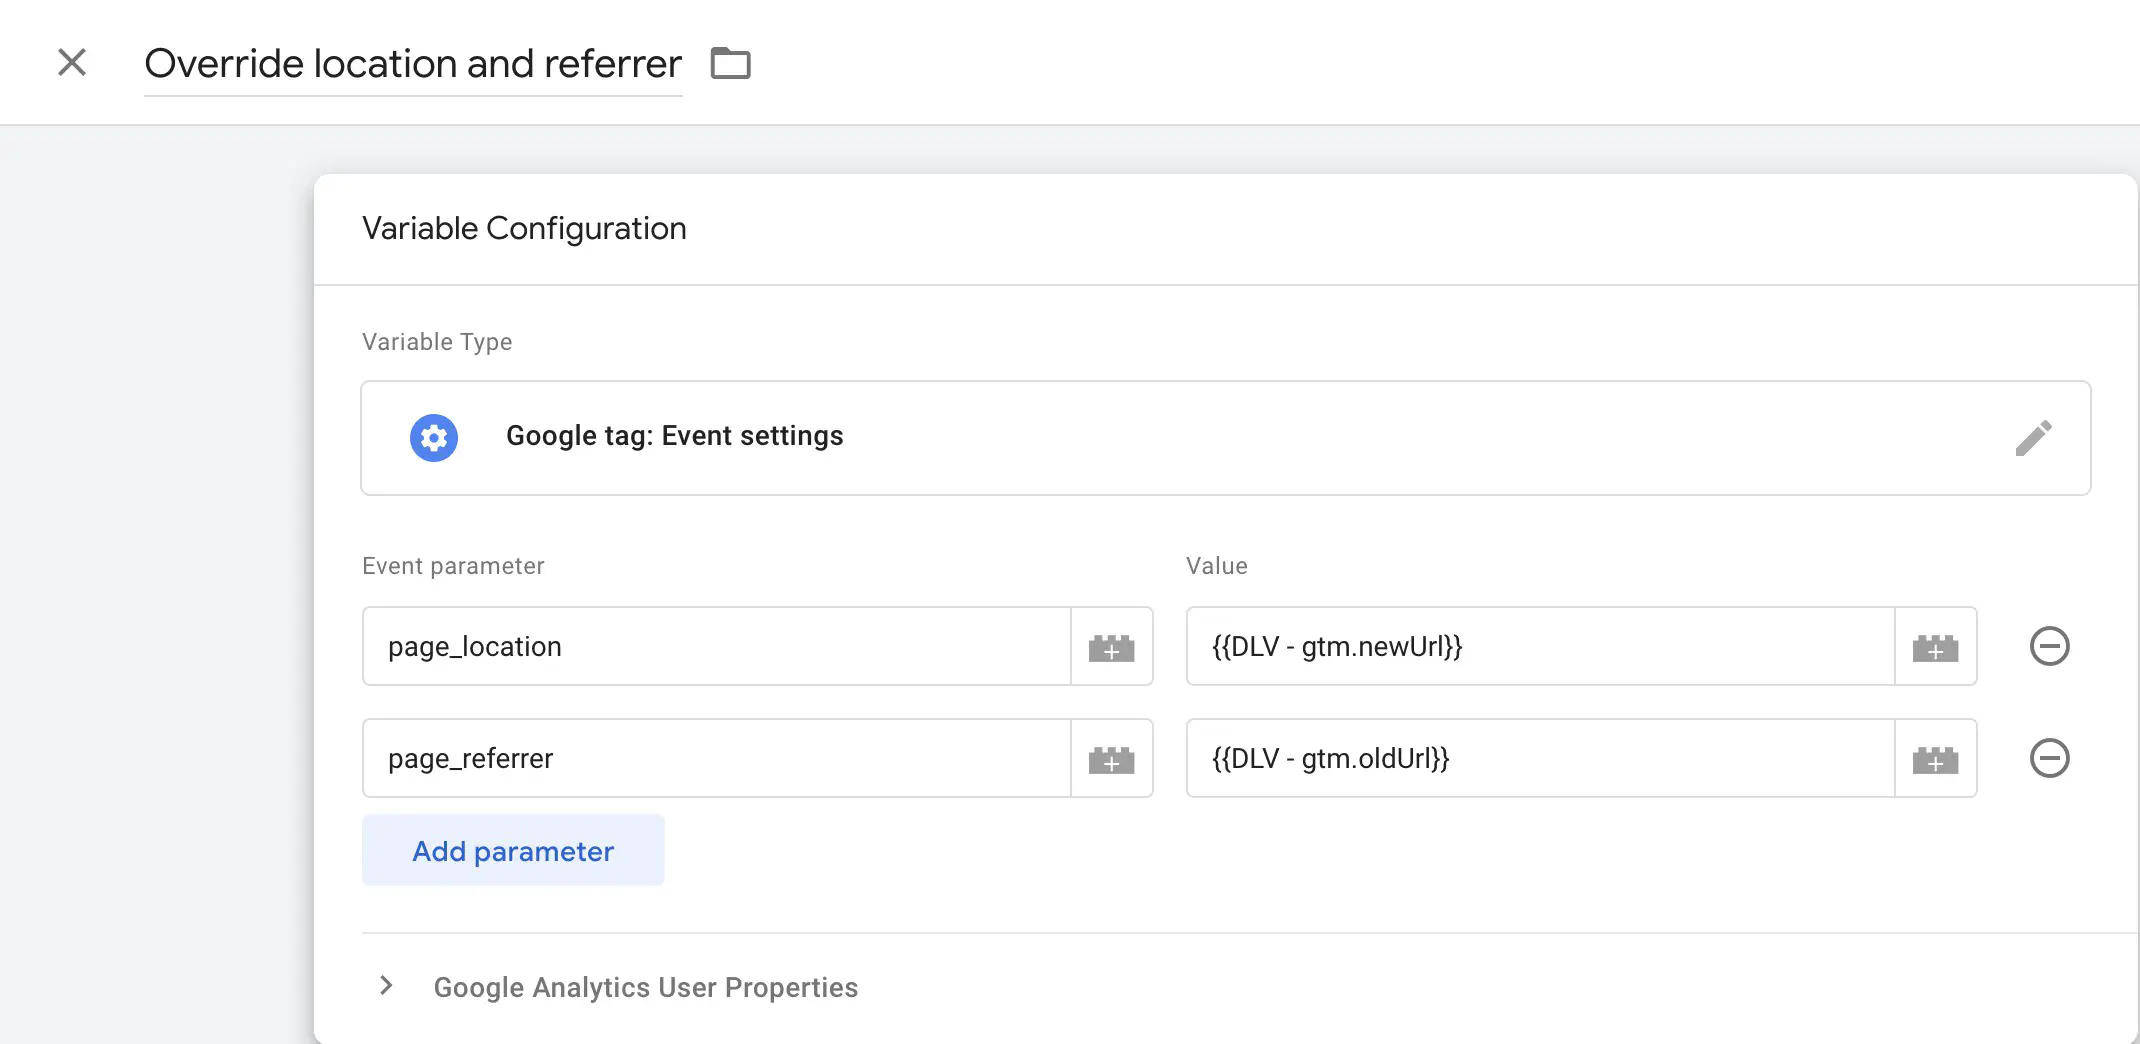 Verwenden Sie die Google tag: Event settings Variable, um die Parameter page_location und page_referrer auszufüllen.